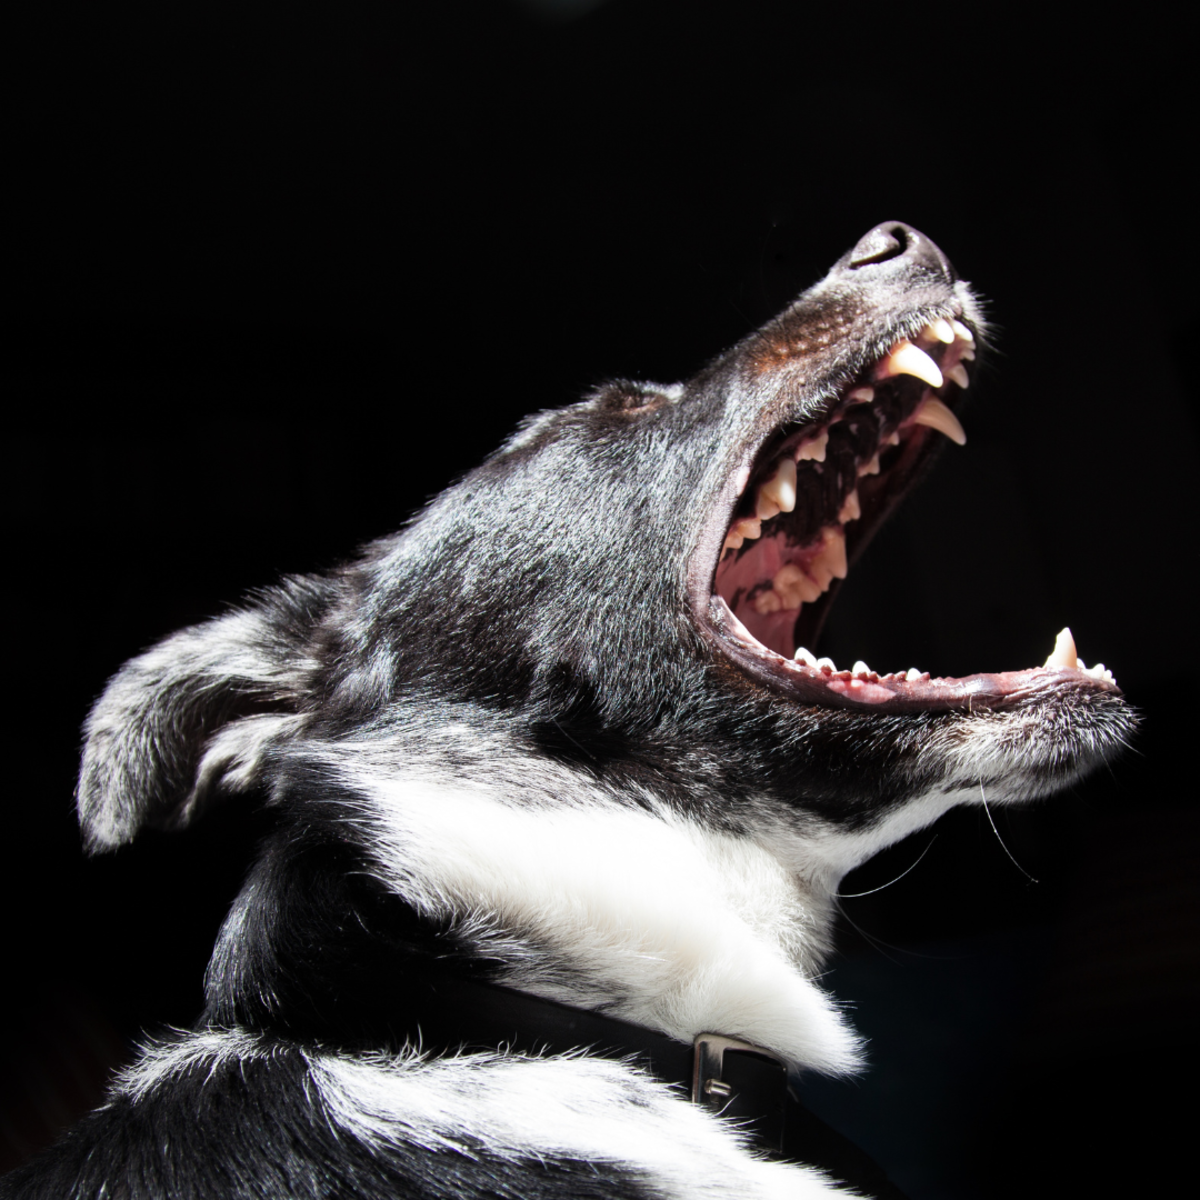 吸血兽通常以狗为目标，尽管它也以攻击牲畜而闻名，有一次还攻击了人。